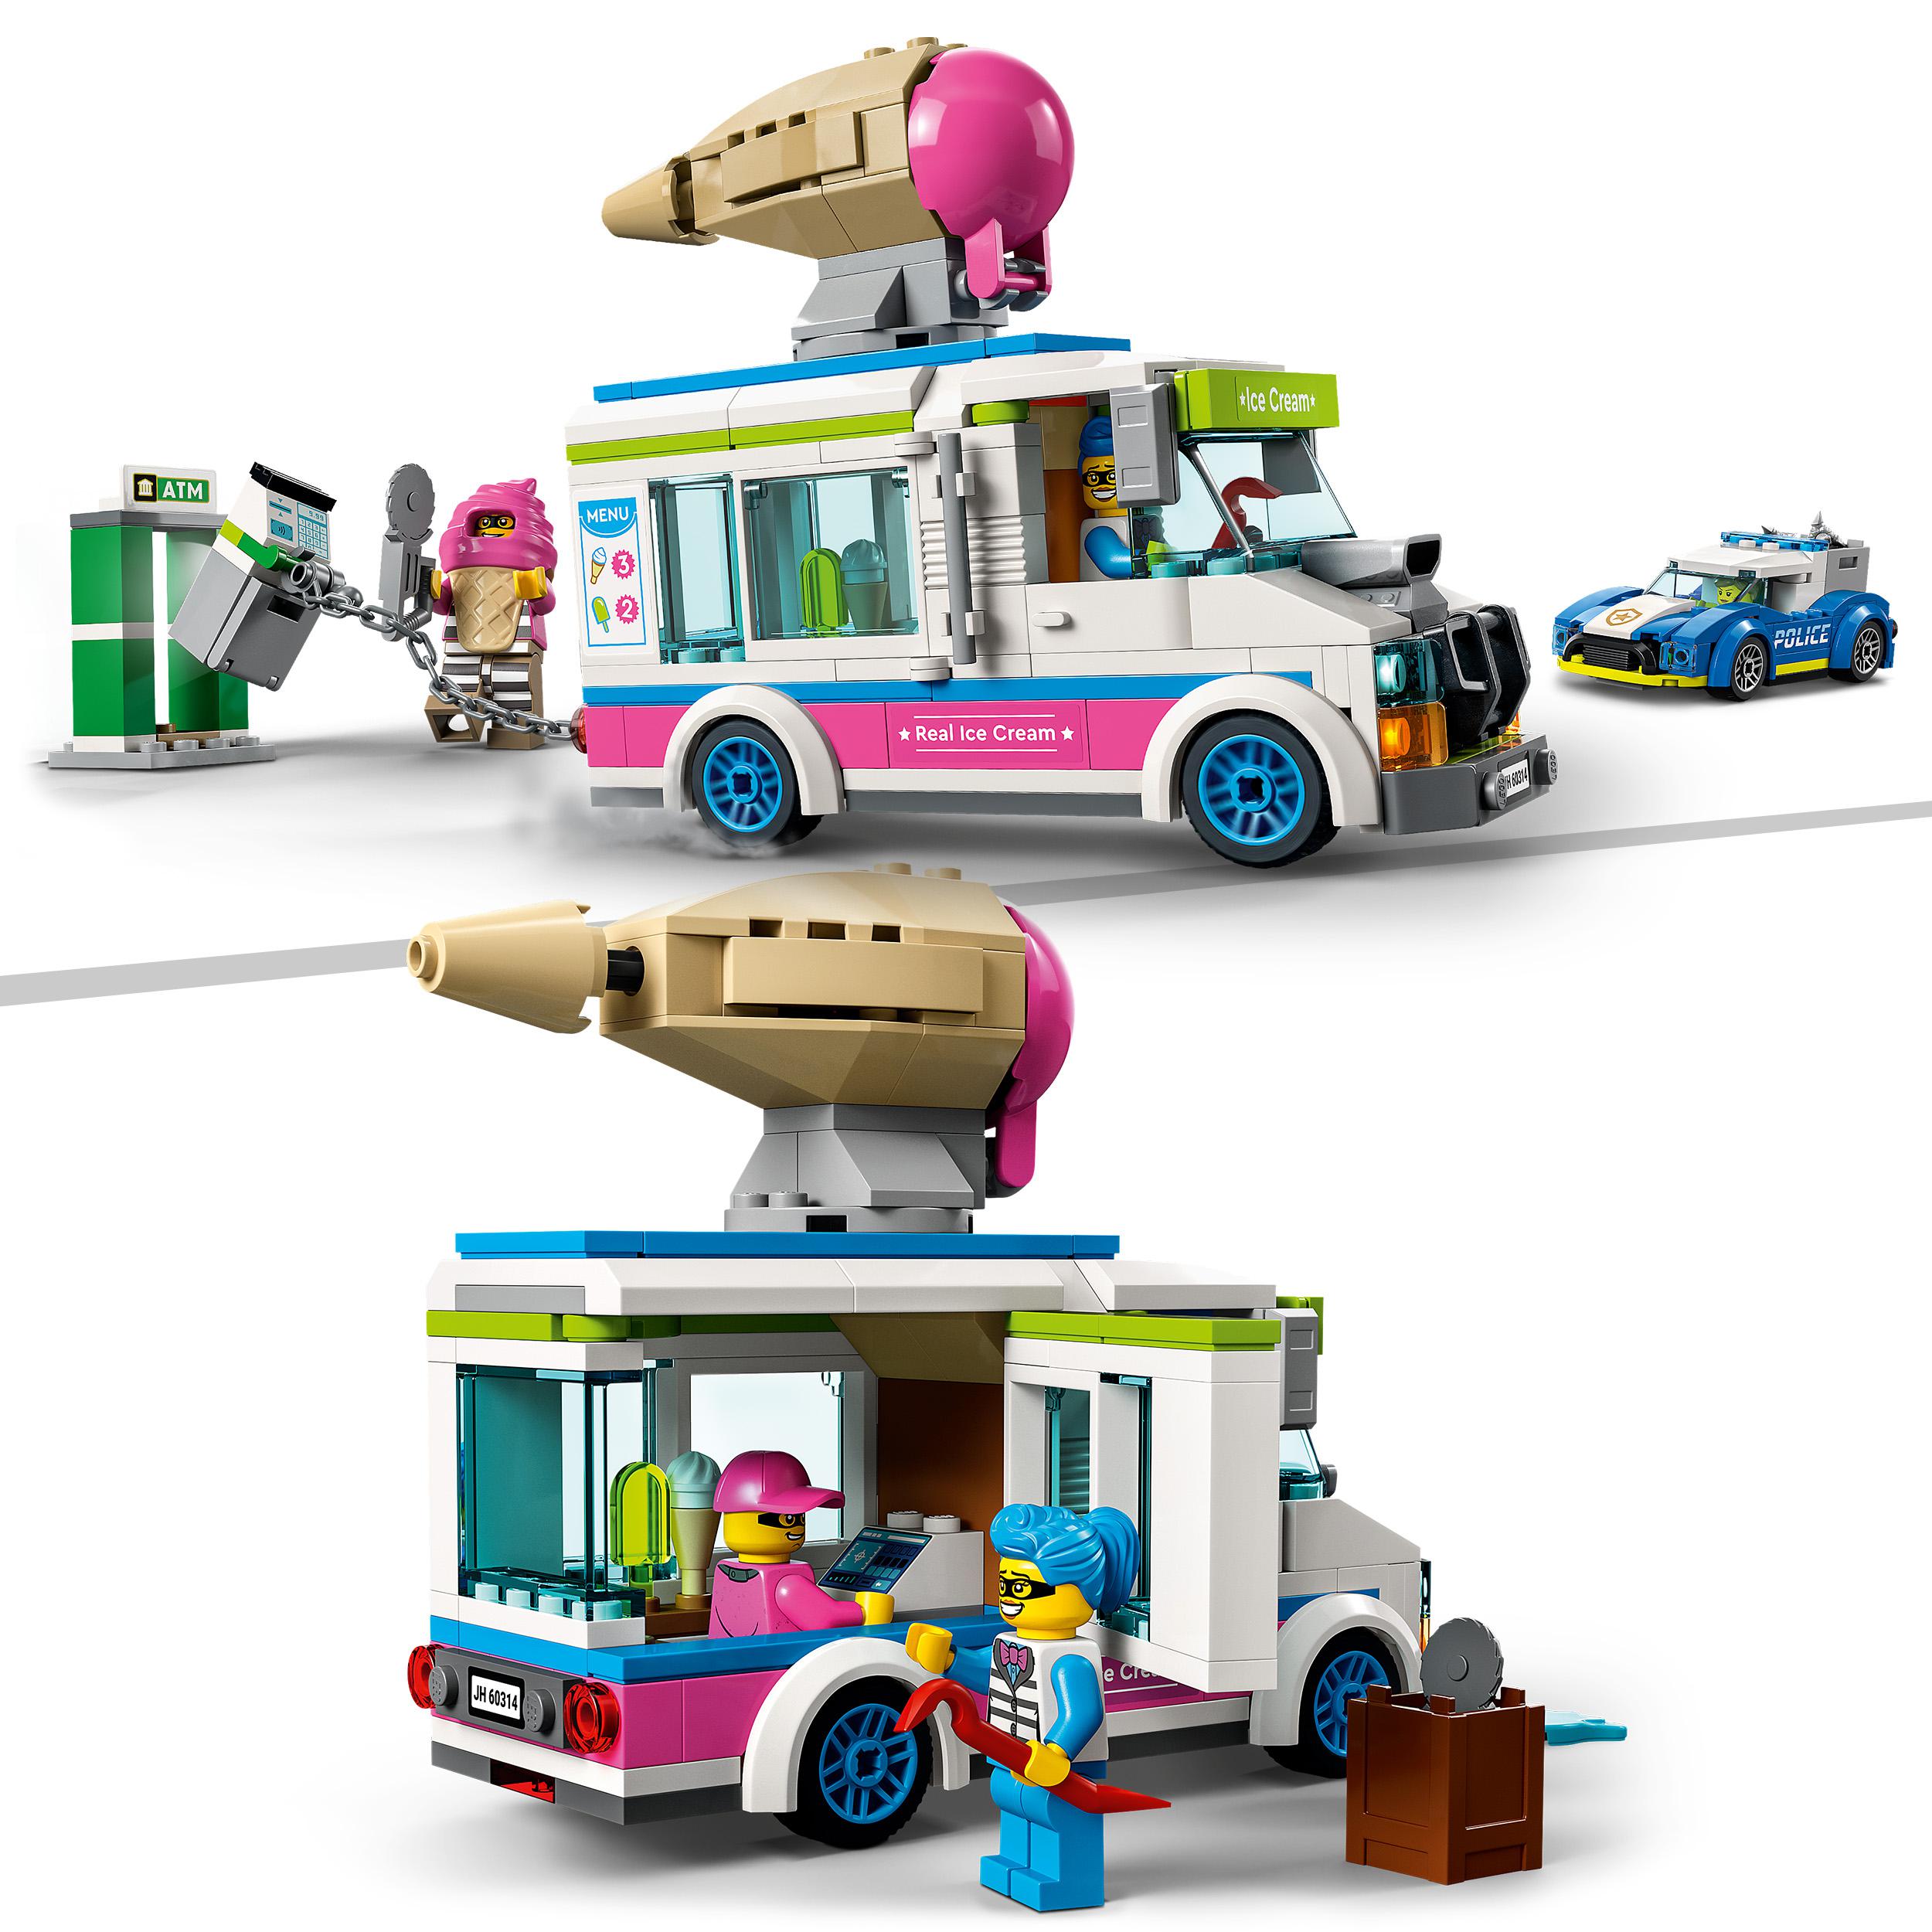 LEGO City Police Il Furgone dei Gelati e l'Inseguimento della Polizia, Set per 60314, , large